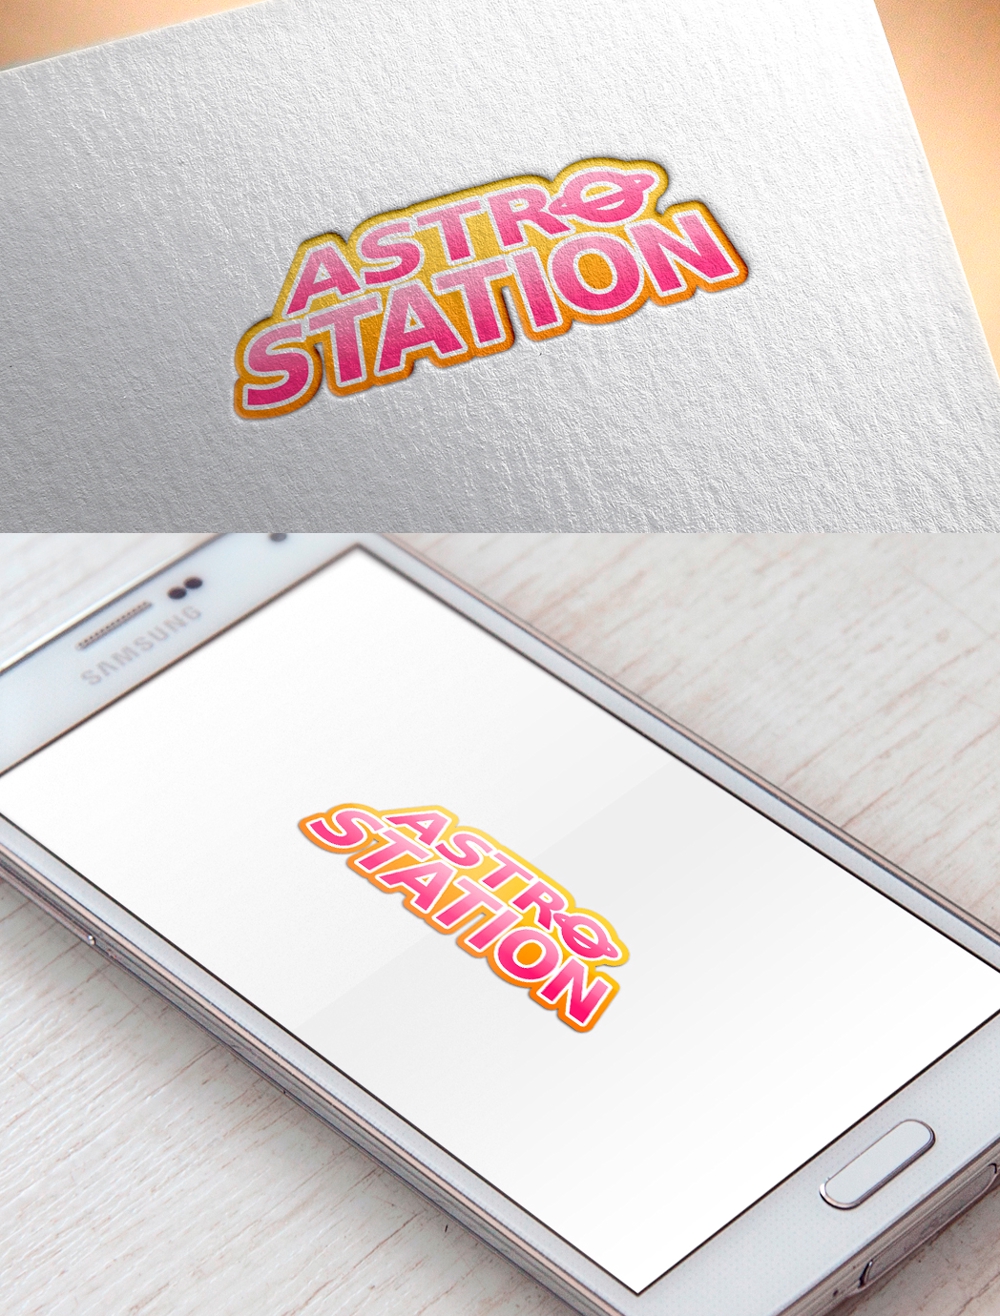 簡易宿泊所(兼漫画喫茶)サイト「ASTRO STATION」のロゴ